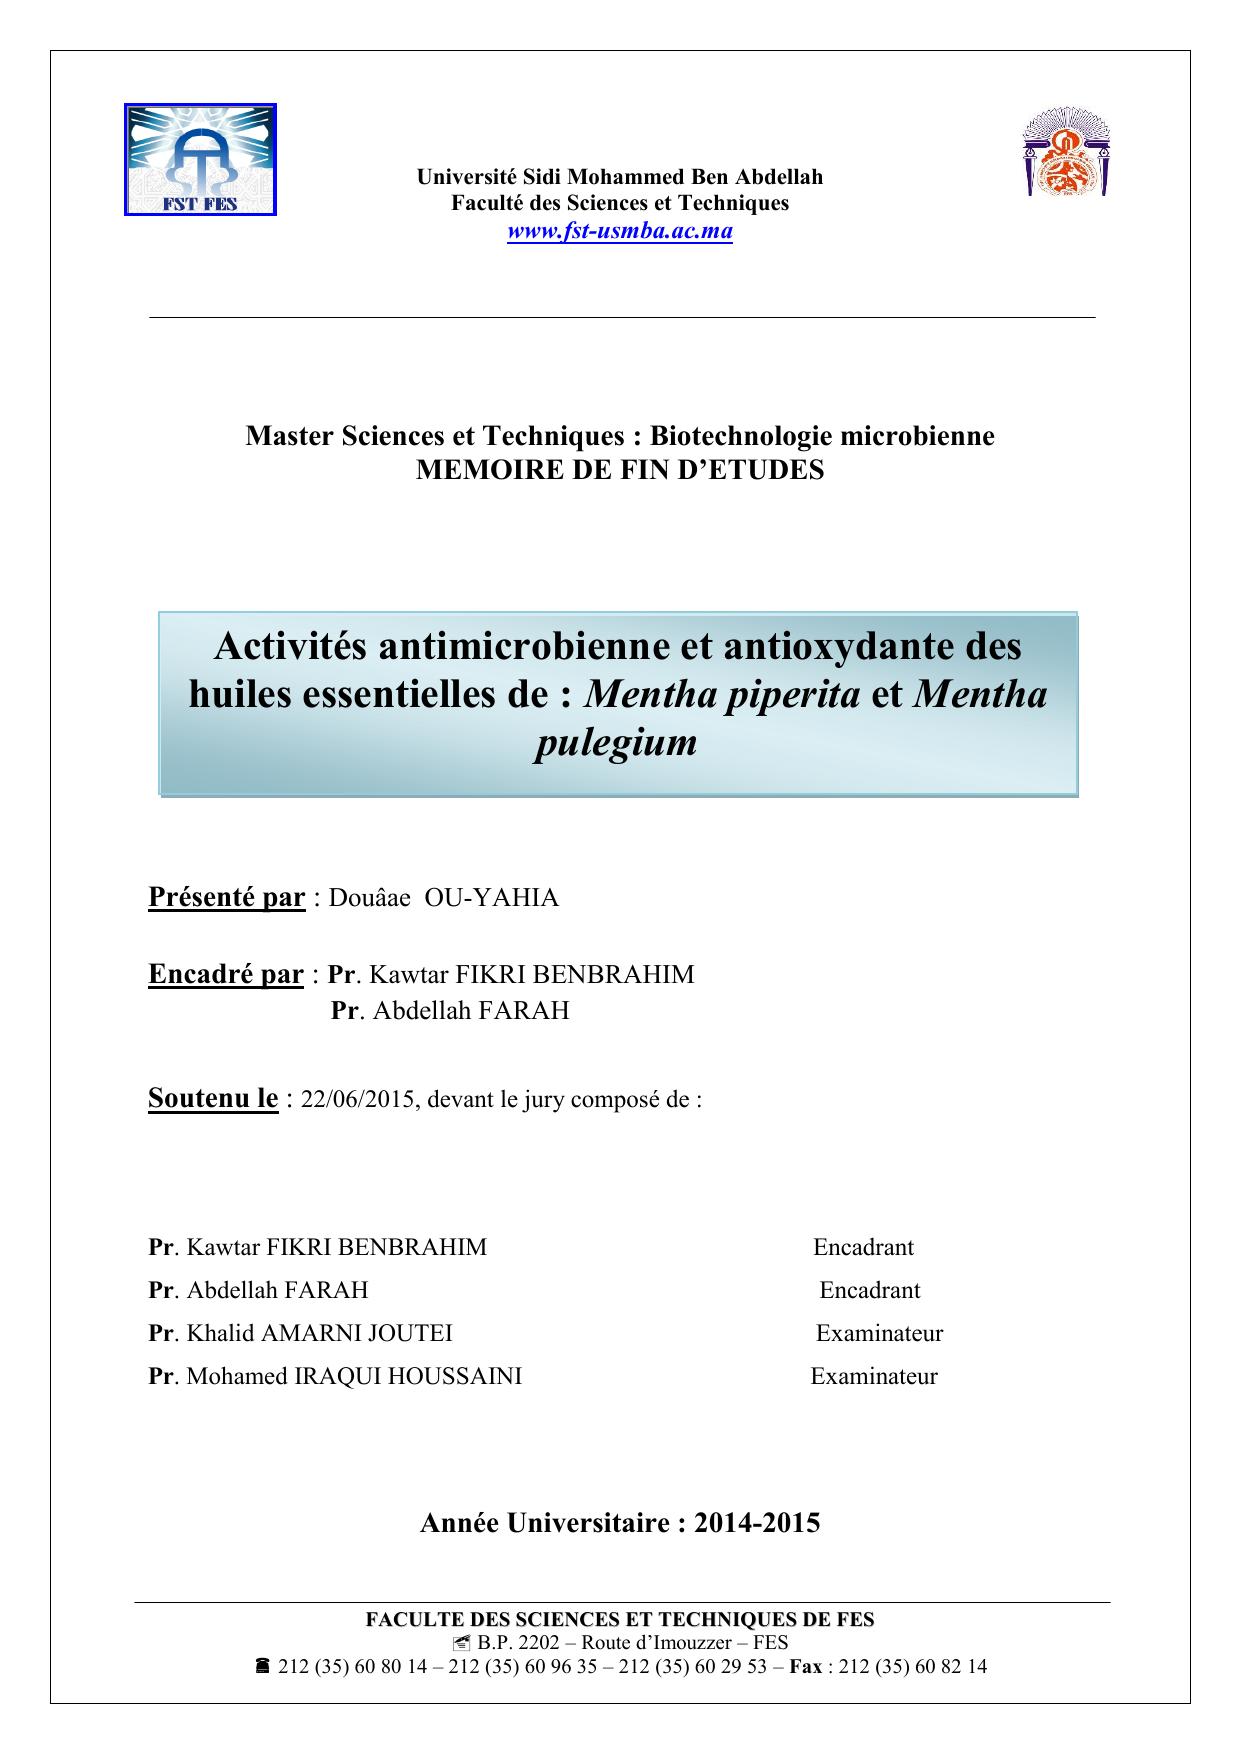 Activités antimicrobienne et antioxydante des huiles essentielles de : Mentha piperita et Mentha pulegium